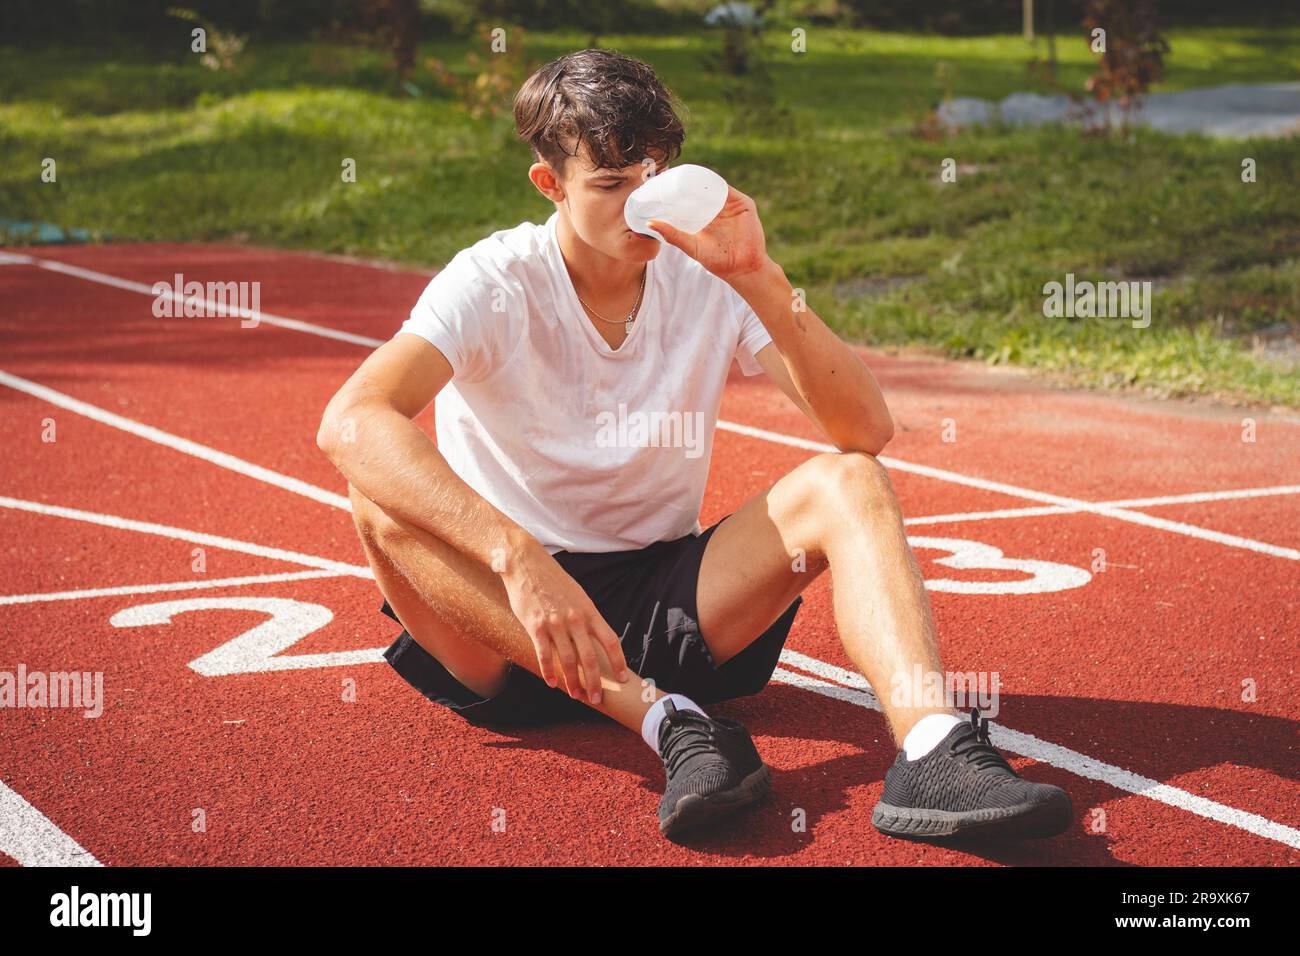 Der junge Sportler erfrischt sich nach einem harten Training auf dem sportlichen Oval in der intensiven Hitze mit Wasser. Ausdauertraining. Braunhaariger Jugendlicher. Stockfoto